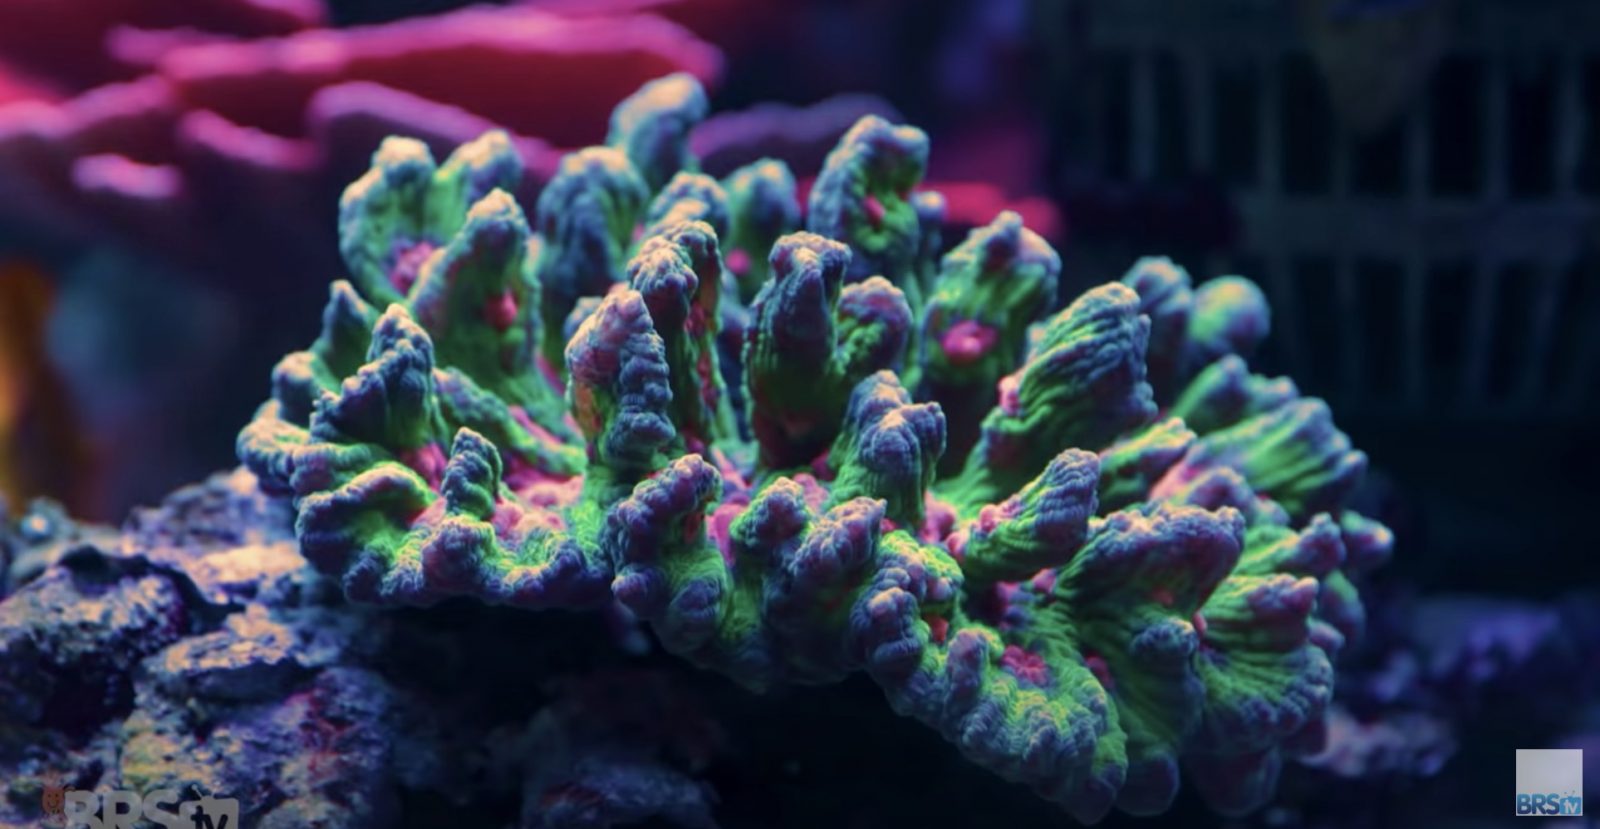 Increíbles corales sanos!